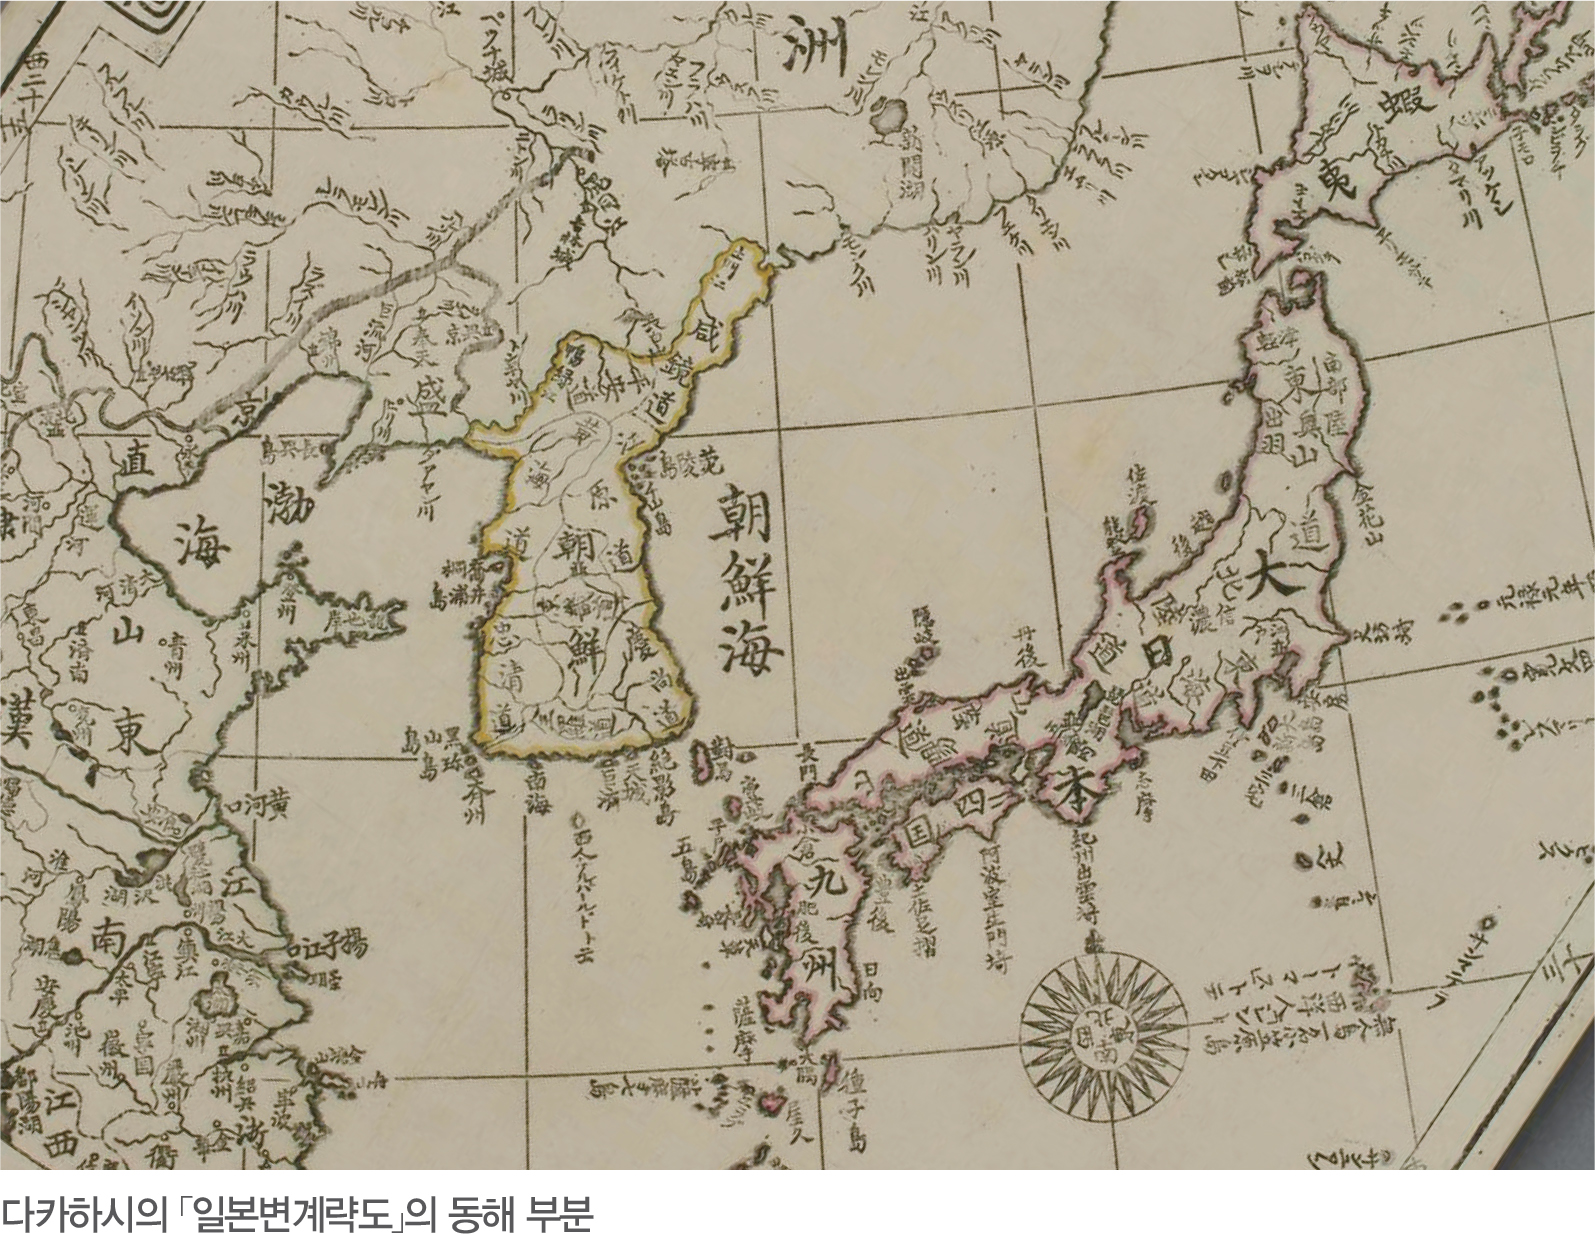 다카하시의 일본변계략도의 동해 부분